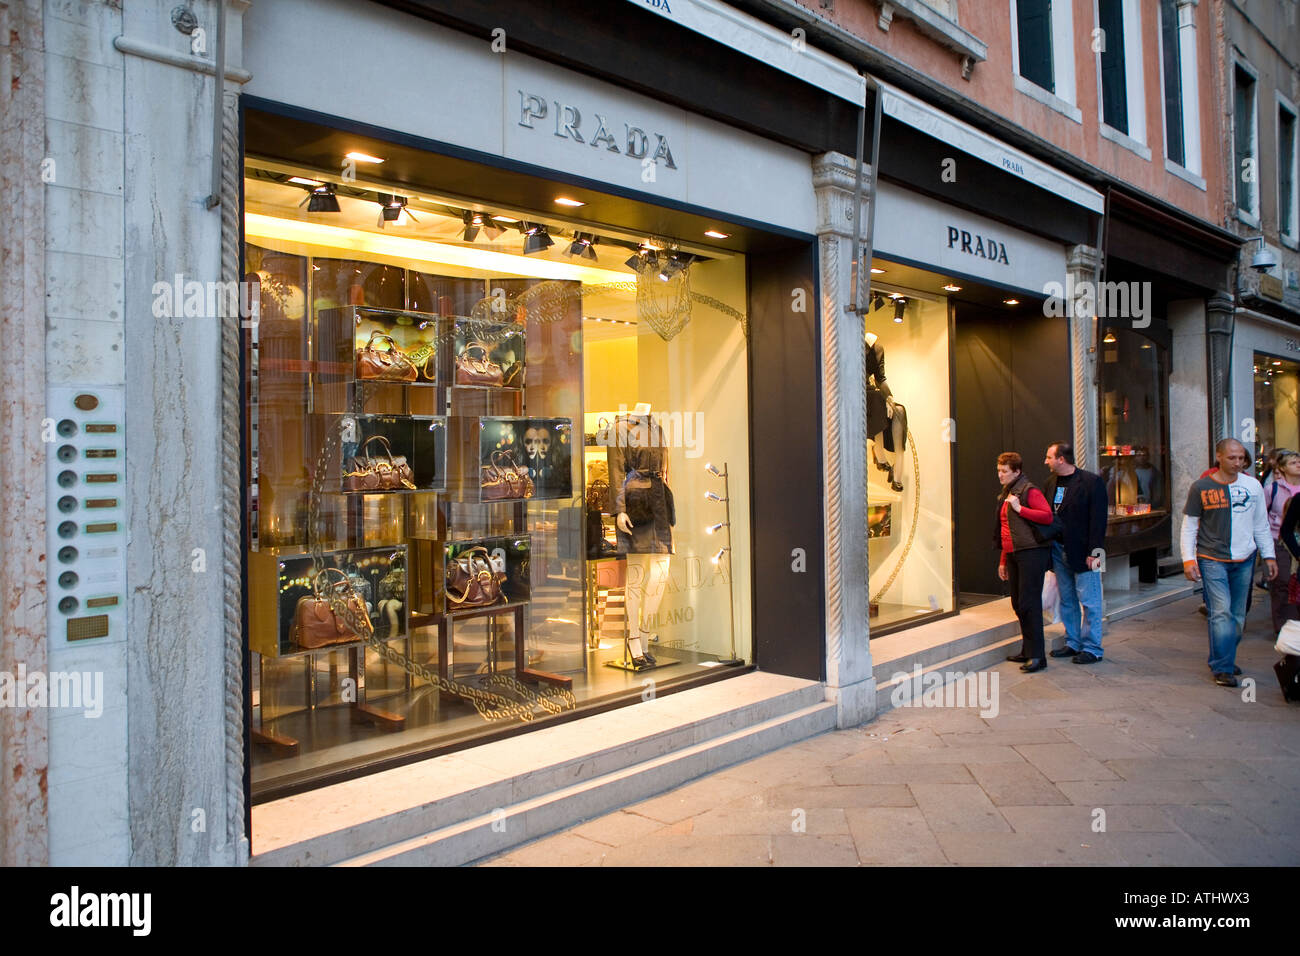 Prada-Geschäft in Venedig Italien Stockfotografie - Alamy